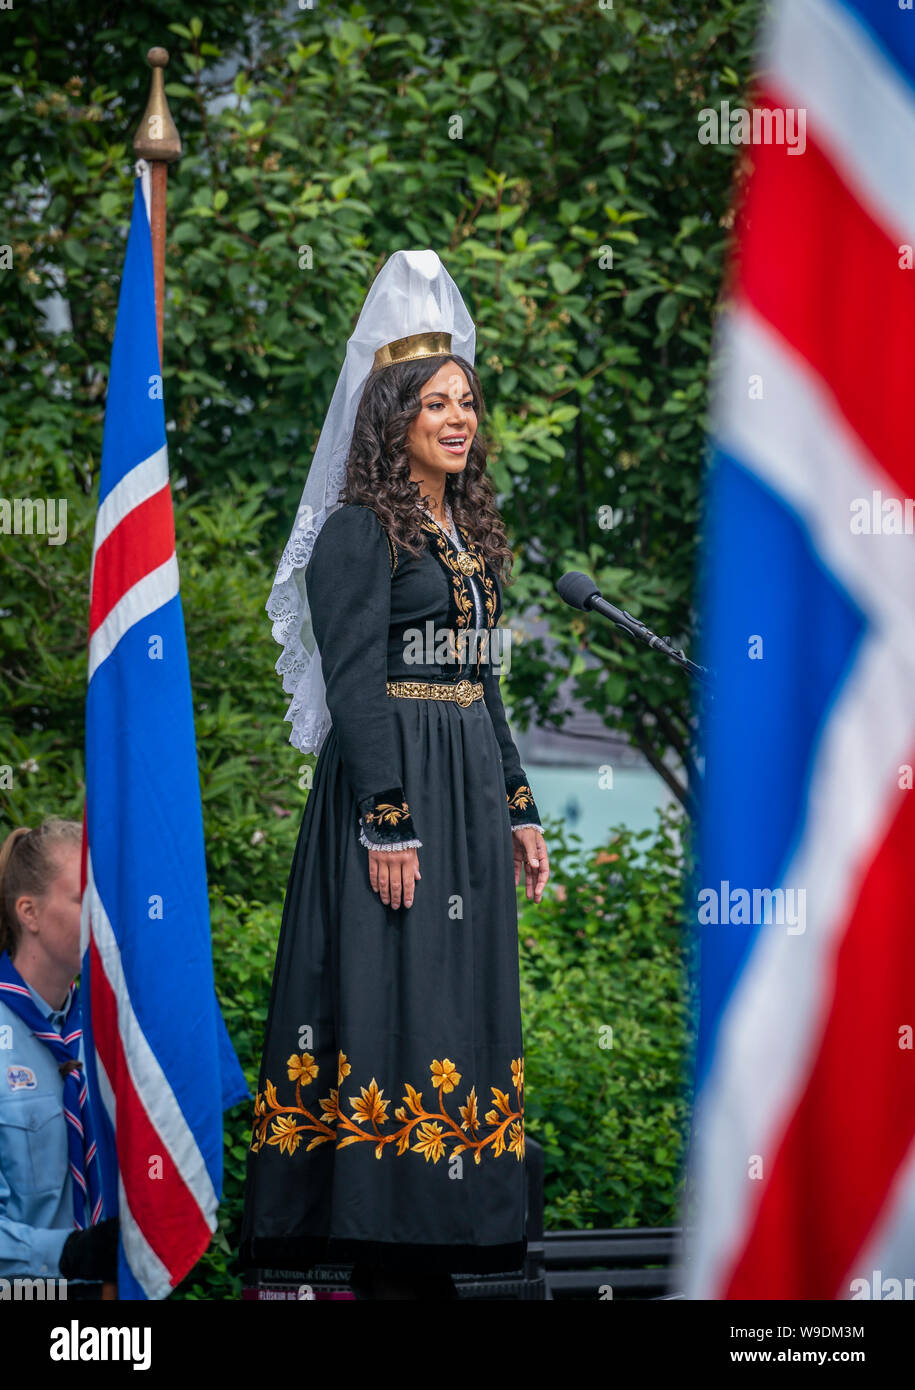 Fjallkonan - "Herrin der Berge" im nationalen Islands Kostüm, Independence Day, 17. Juni, Reykjavik, Island. Stockfoto